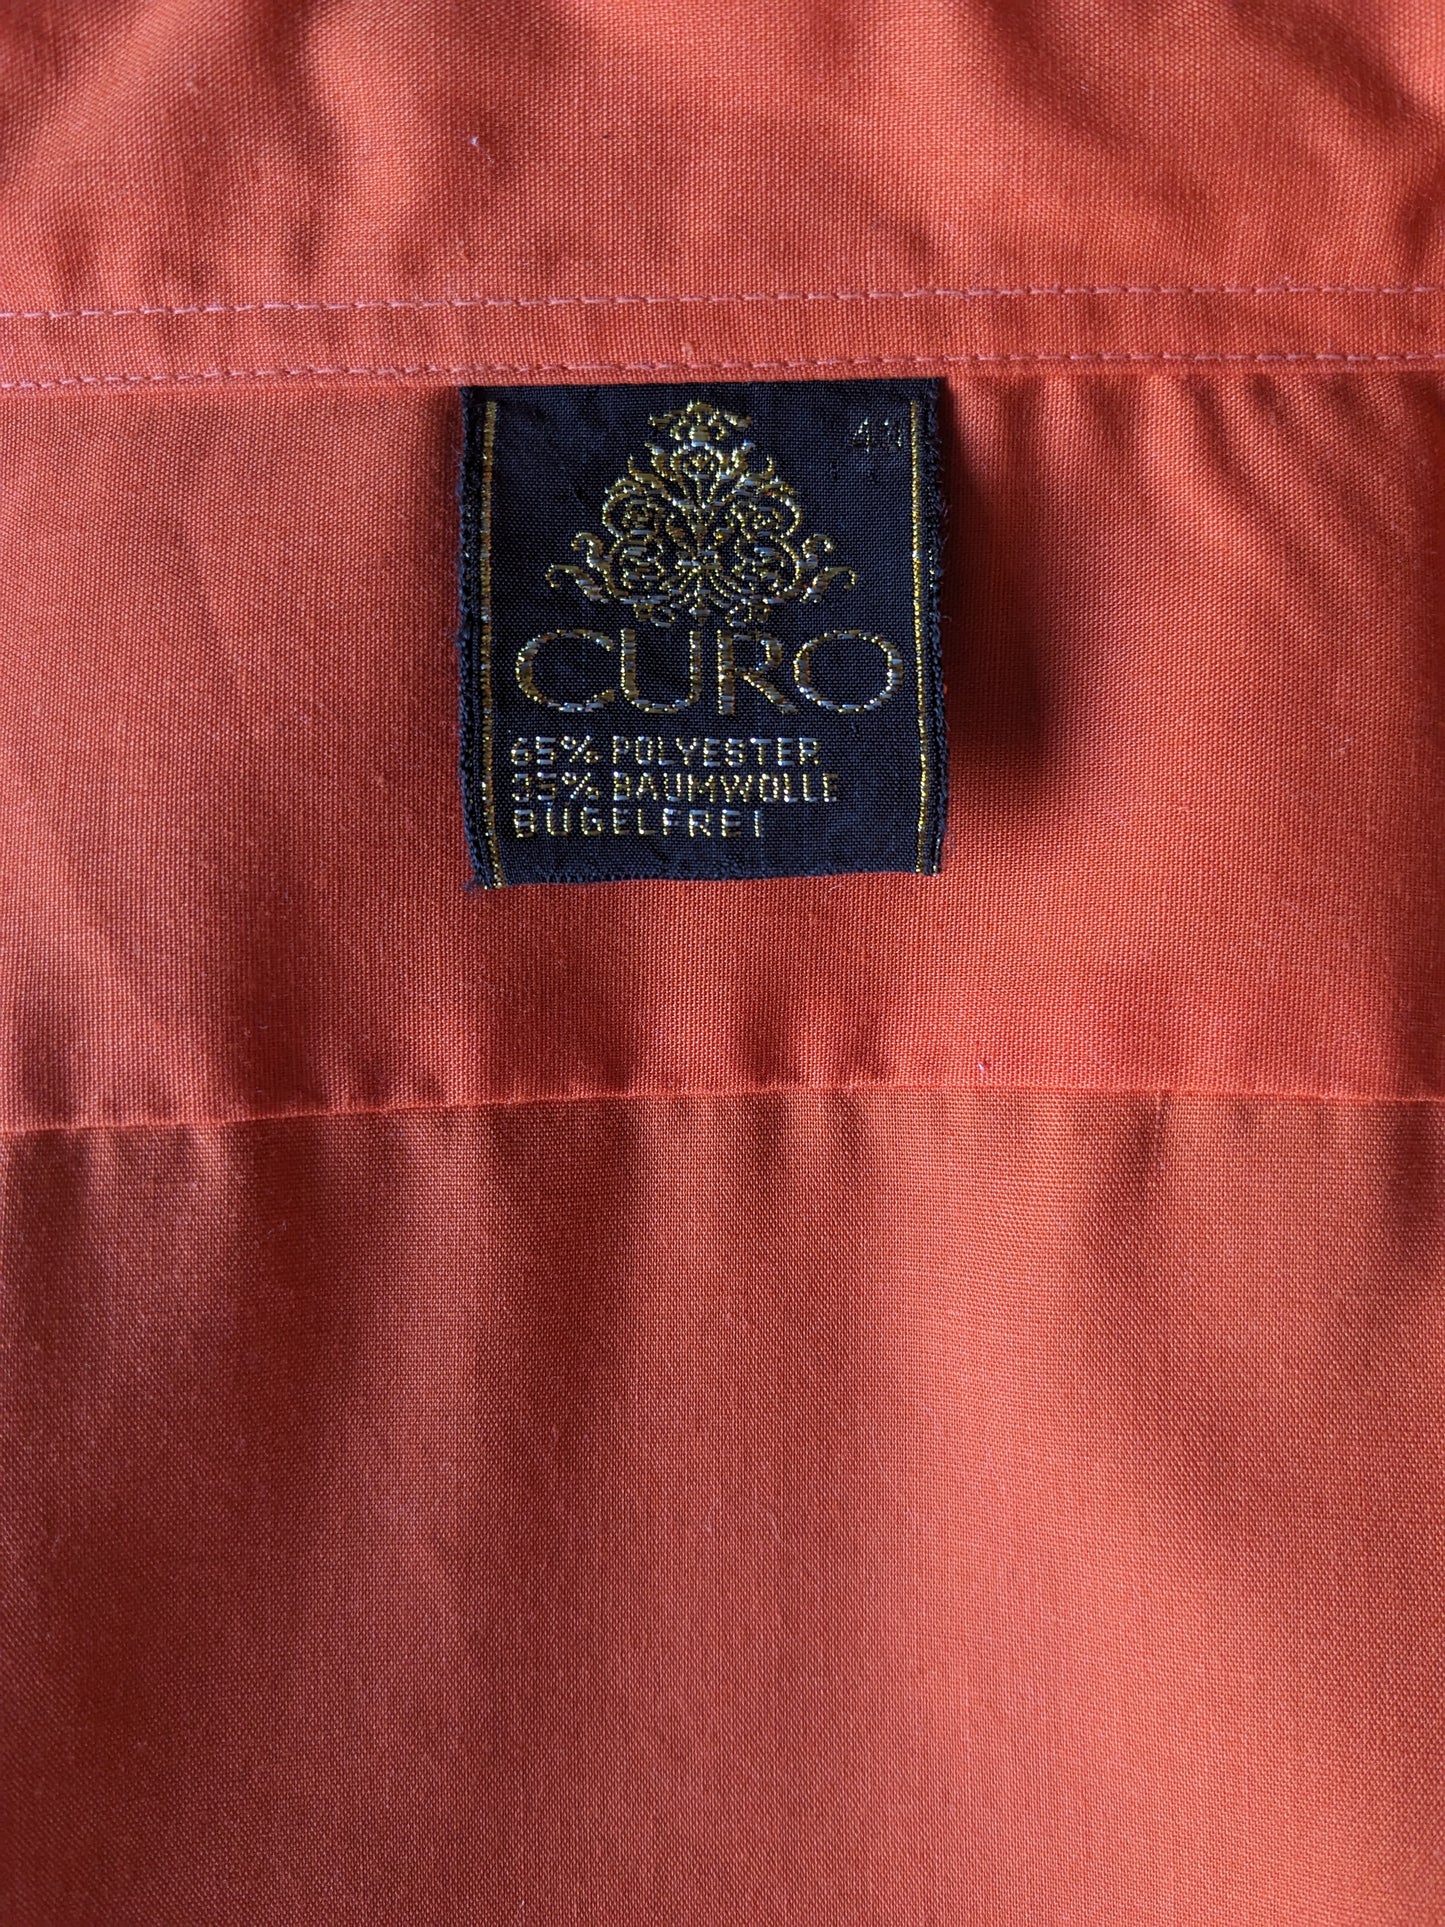 Vintage 70's Curo overhemd met puntkraag. Oranje gekleurd. Maat XL.